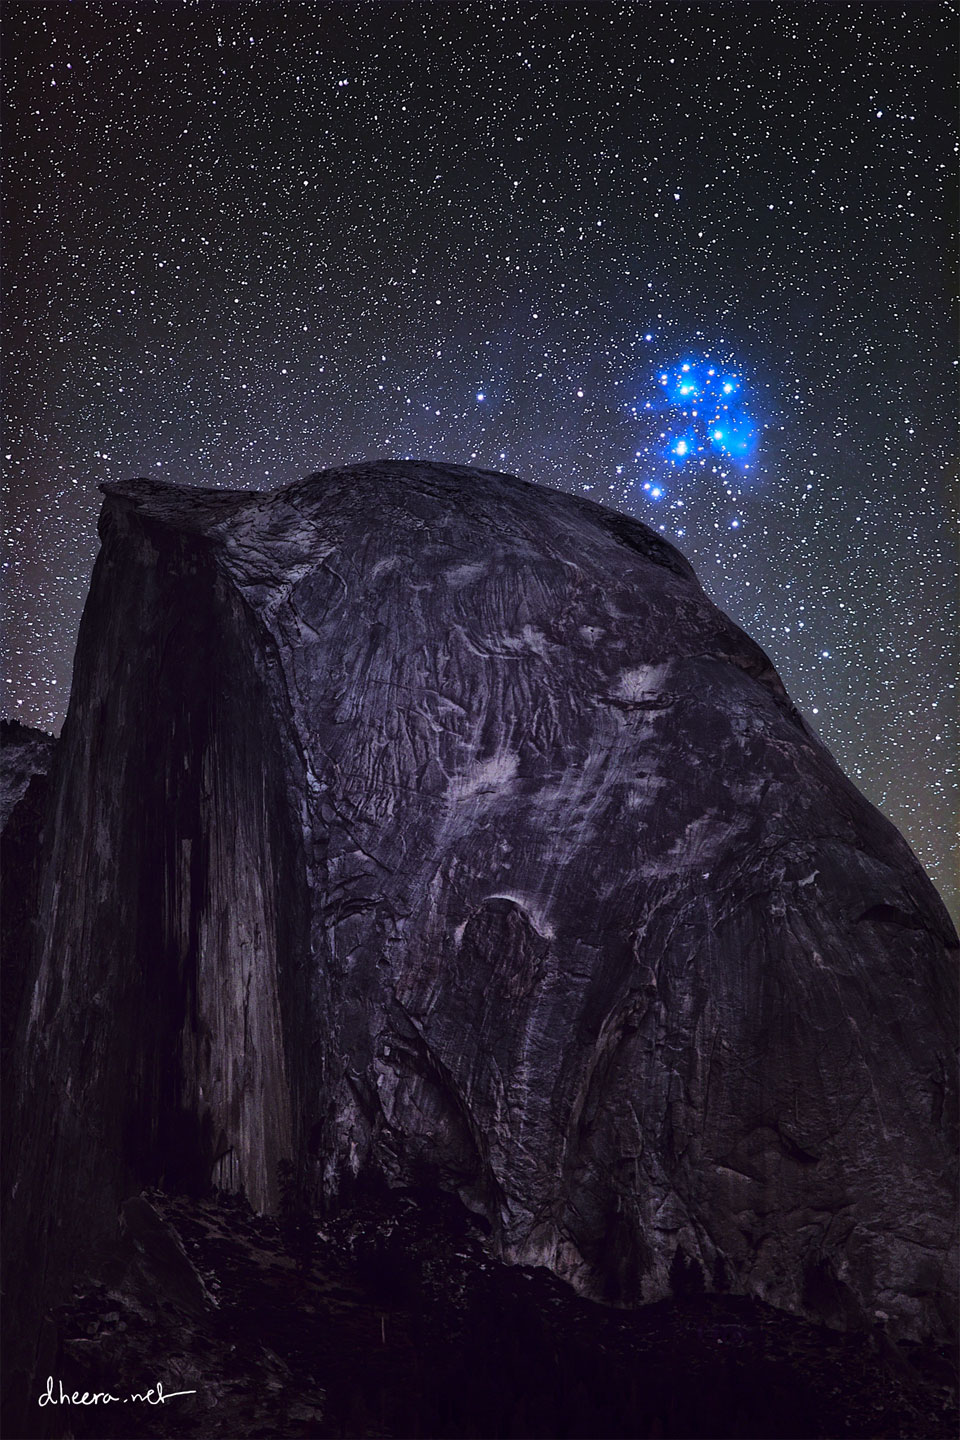 特色图片显示了半圆顶后面的亮蓝色昴宿星团，这是一个巨大的圆形岩层，看起来很暗，但有明亮的凹槽。请参阅说明以获取更多详细信息。